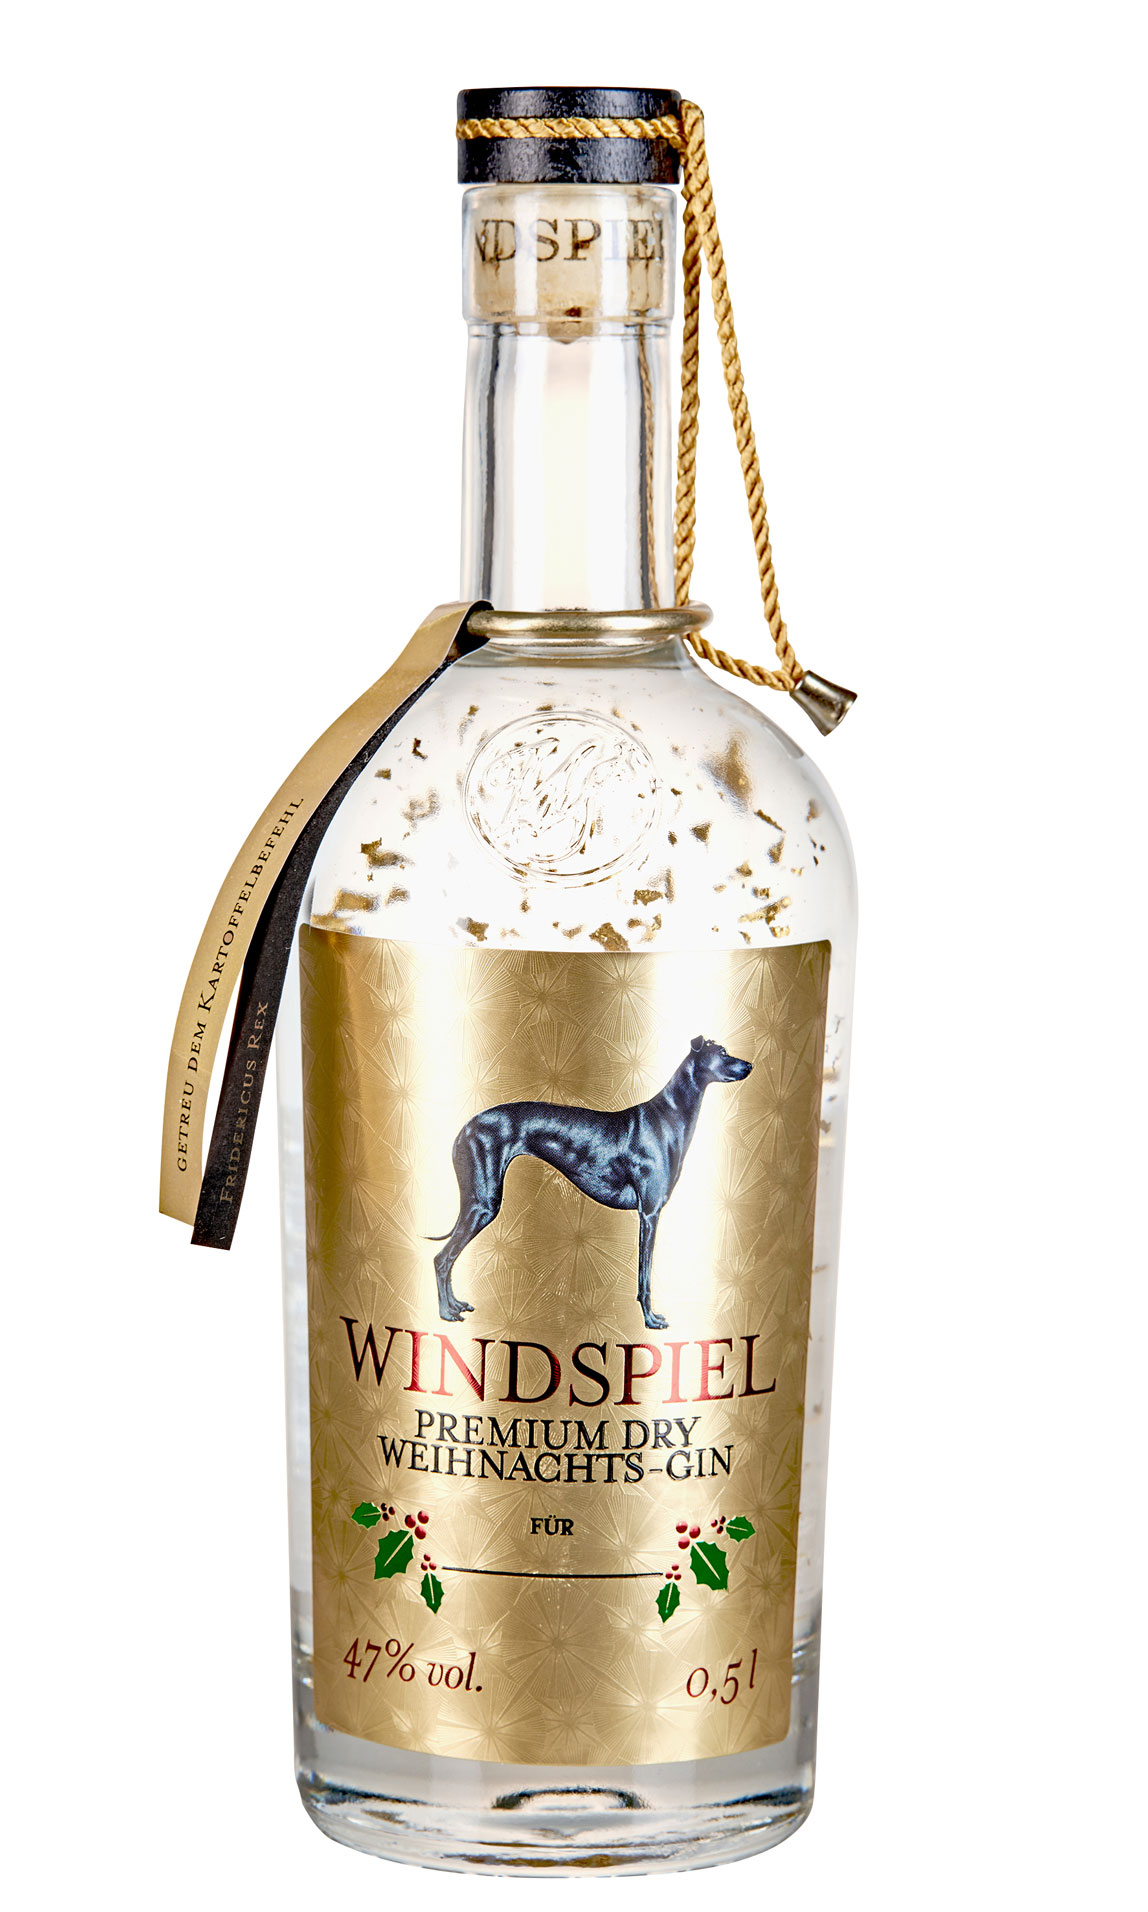 Windspiel Premium Dry Weihnachts-Gin 47% vol. 0,5 Liter